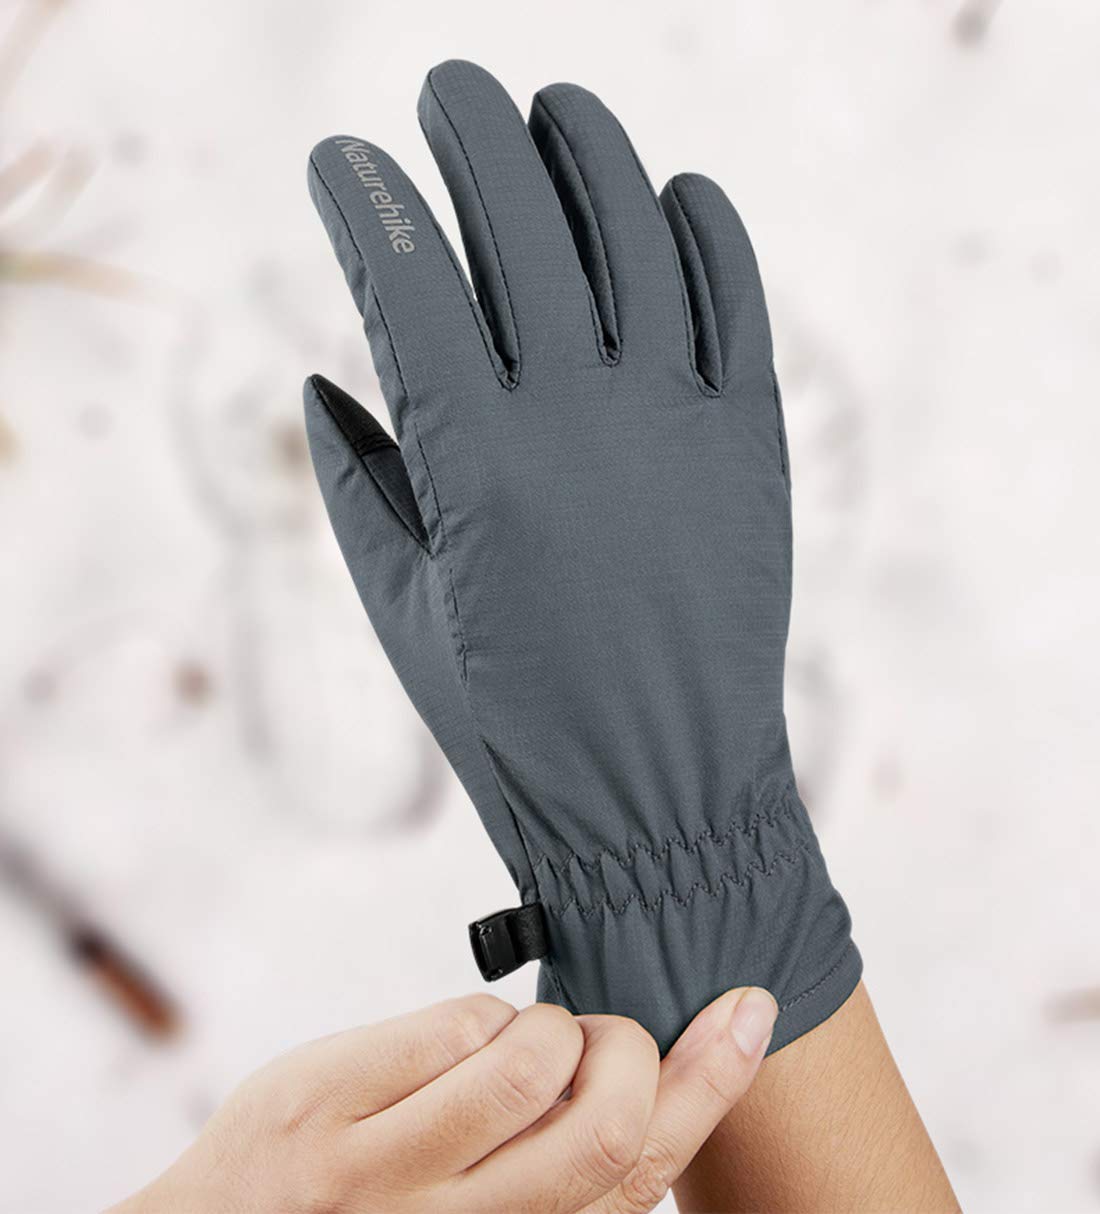 Găng tay giúp bảo vệ bạn trai bạn trong thời tiết giá lạnh